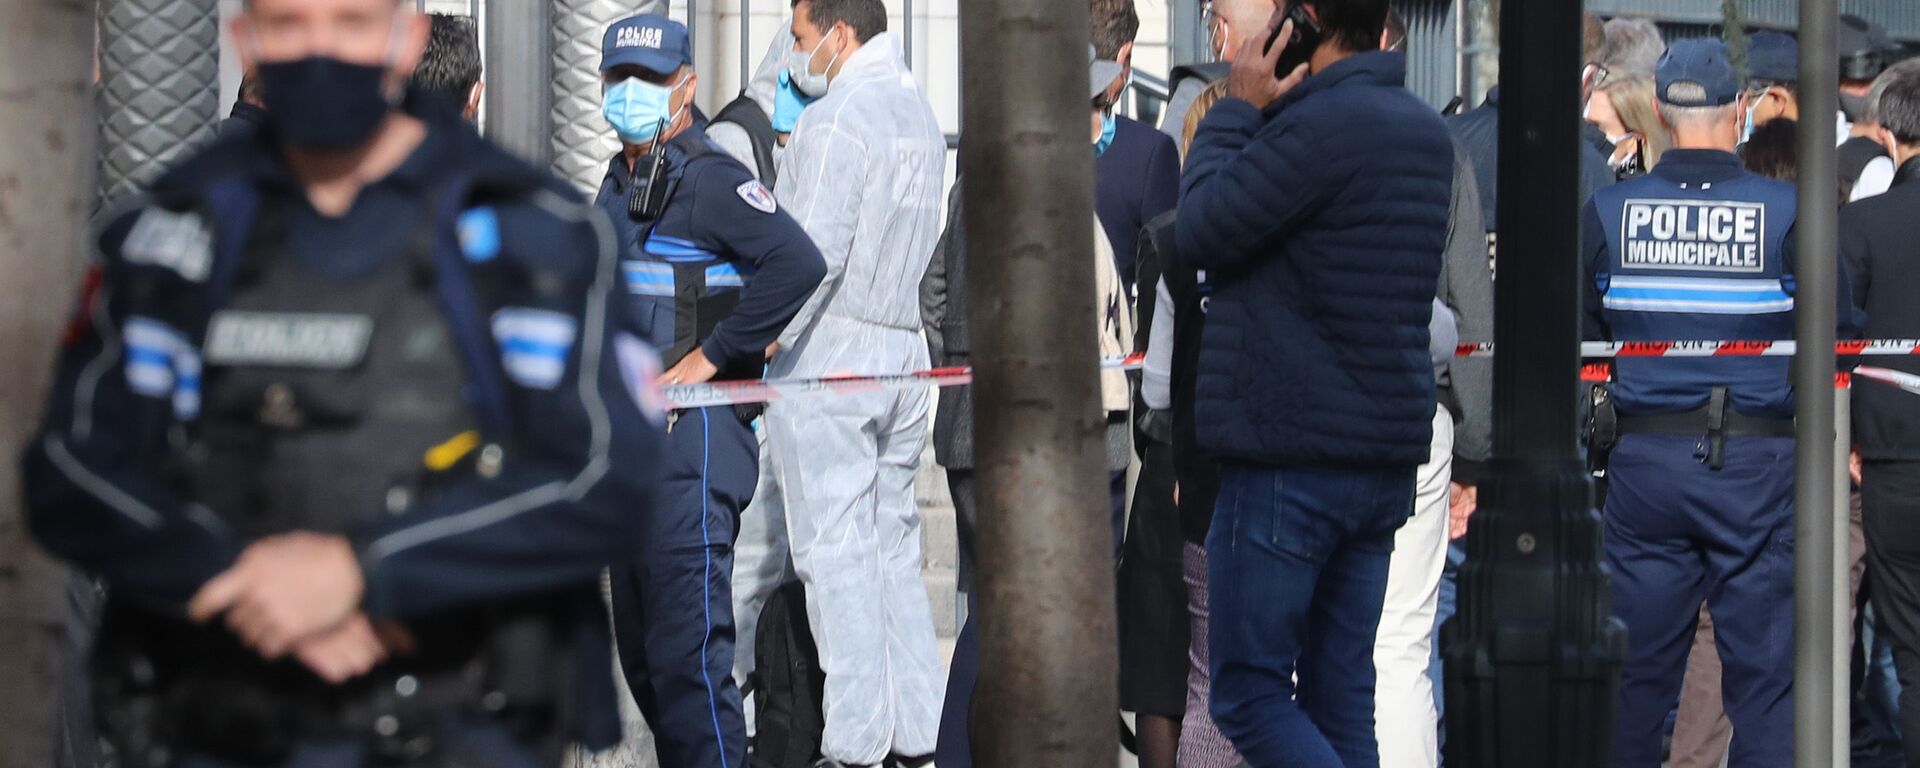  الشرطة الفرنسية في موقع هجوم طعن بالسكين أمام كاتدرائية نوتردام في مدينة نيس، فرنسا 29 أكتوبر 2020 - سبوتنيك عربي, 1920, 17.02.2021